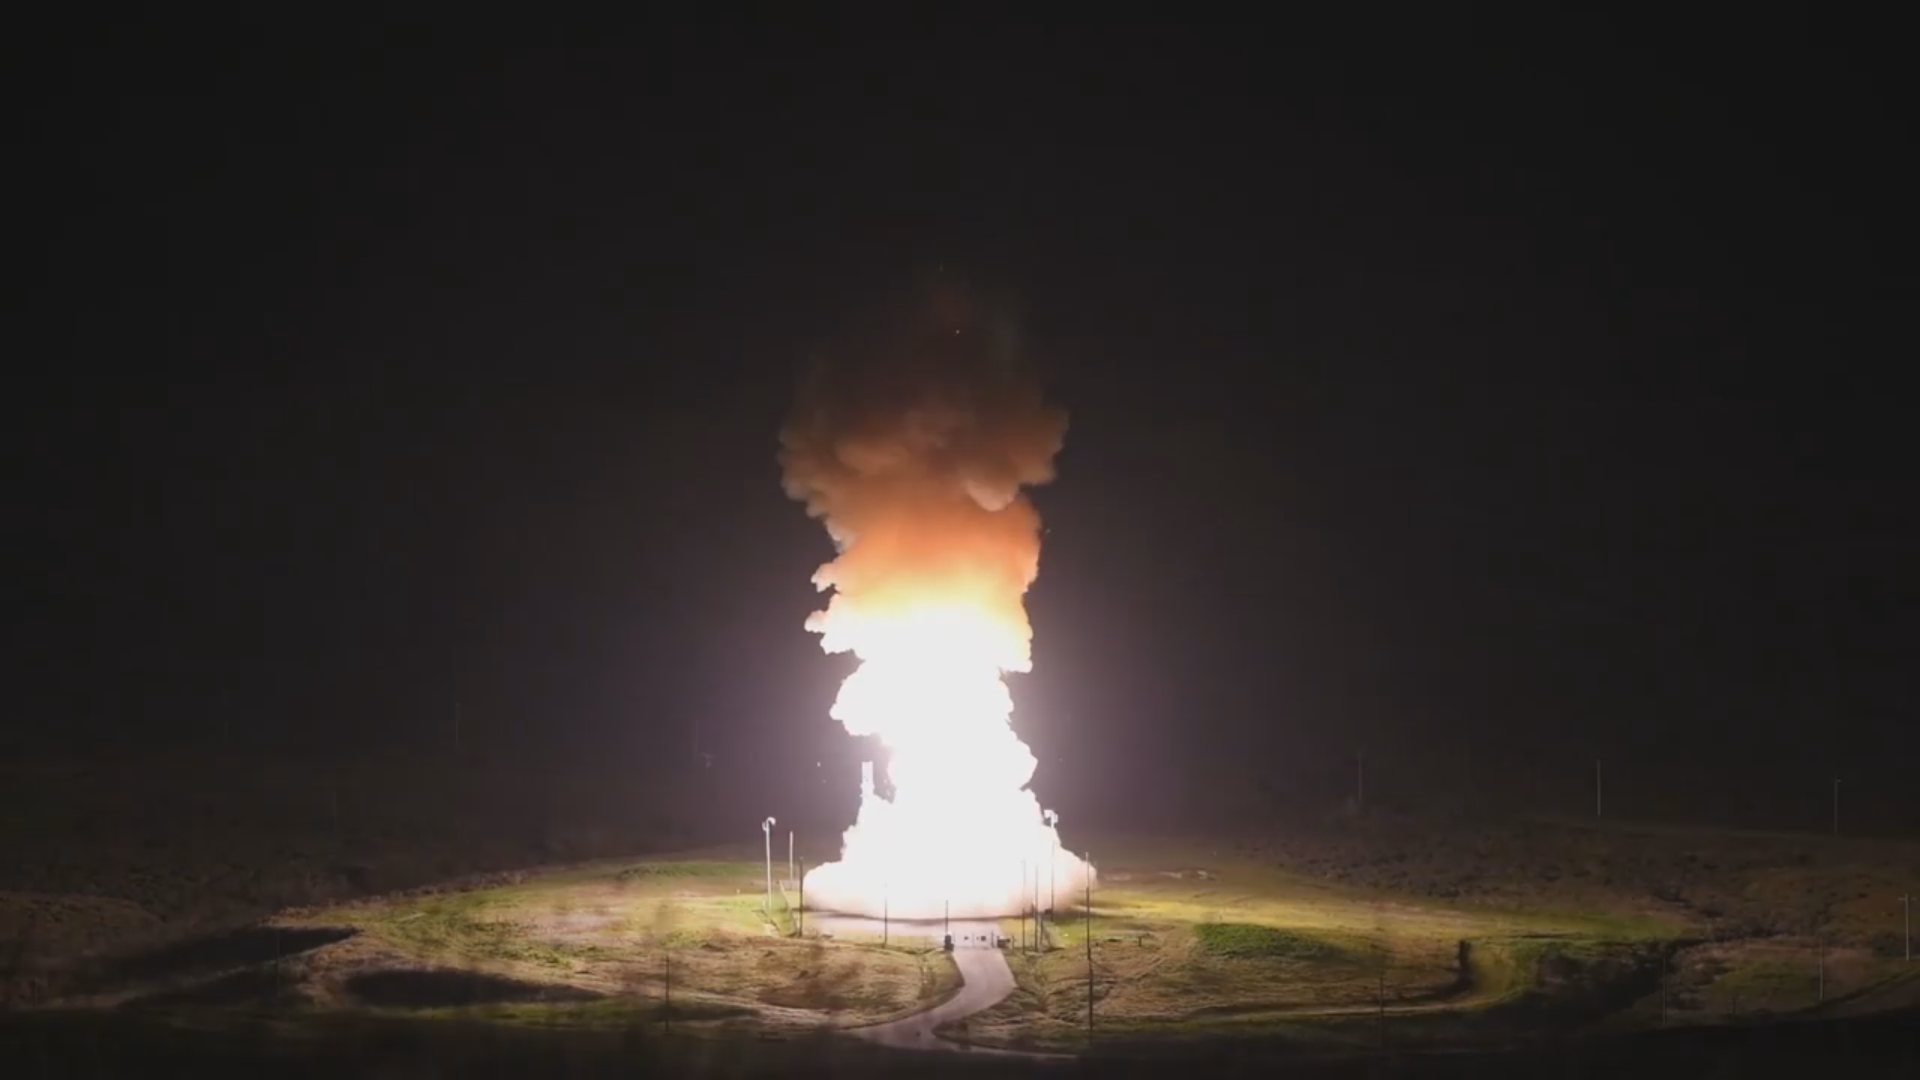 US Air Force zeigt seltenes Video vom Start einer Minuteman III Interkontinentalrakete